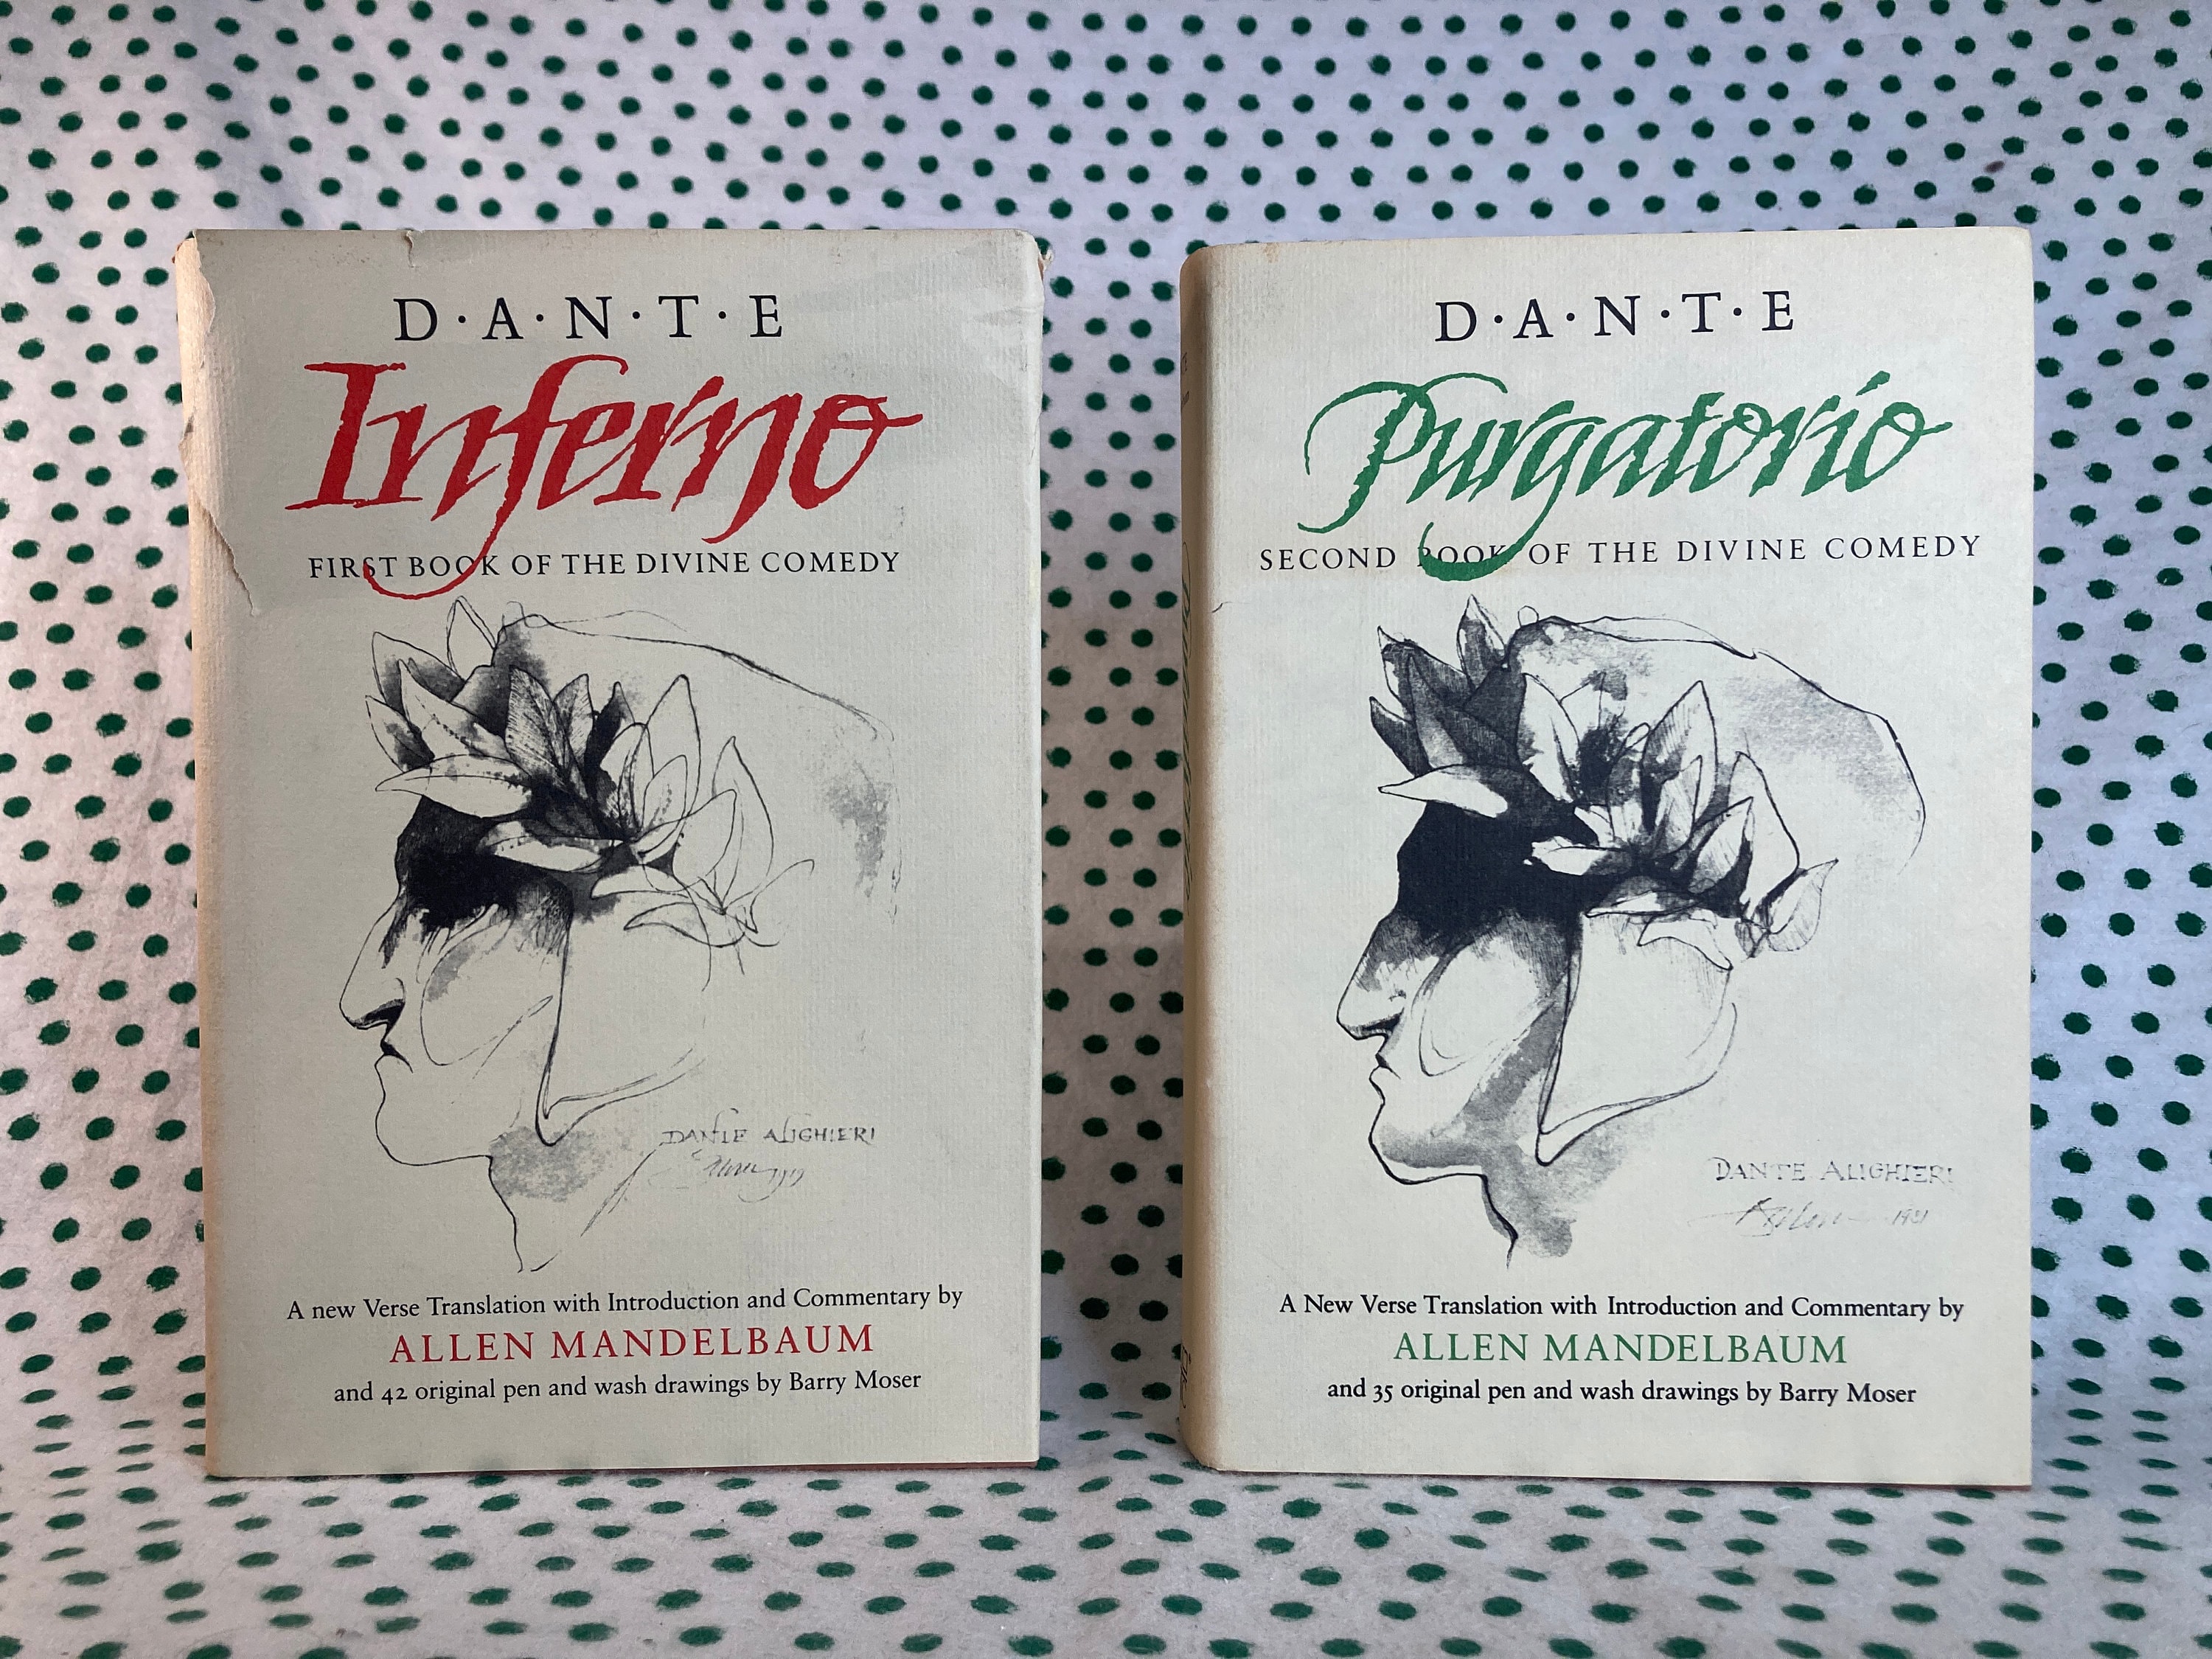 Dante's Inferno - LA CASE Books